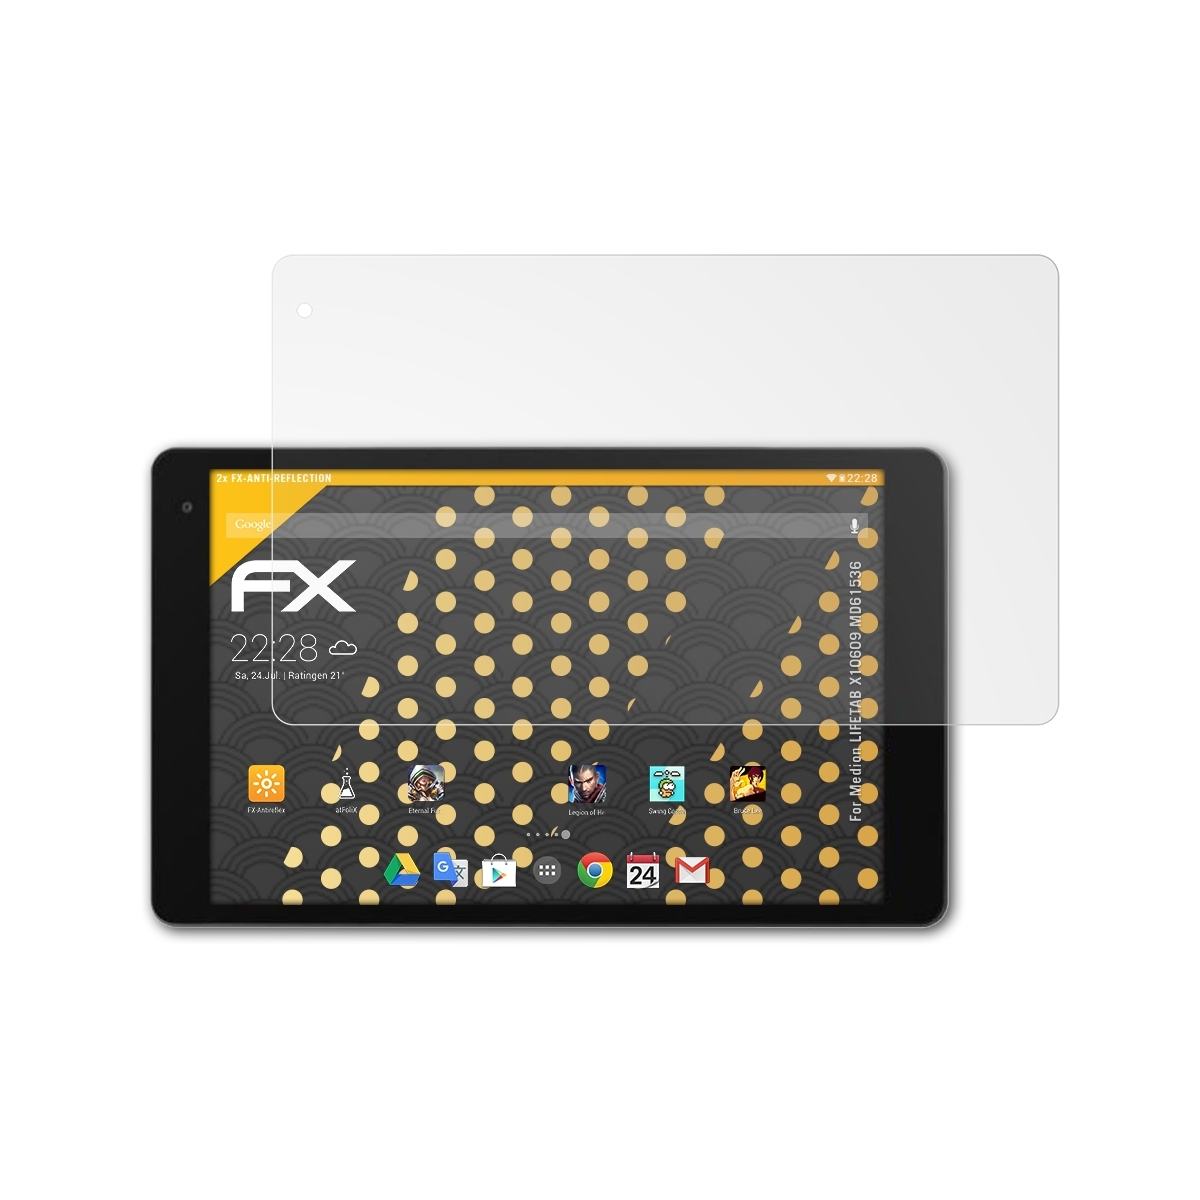 ATFOLIX 2x FX-Antireflex Displayschutz(für Medion X10609 LIFETAB (MD61536))